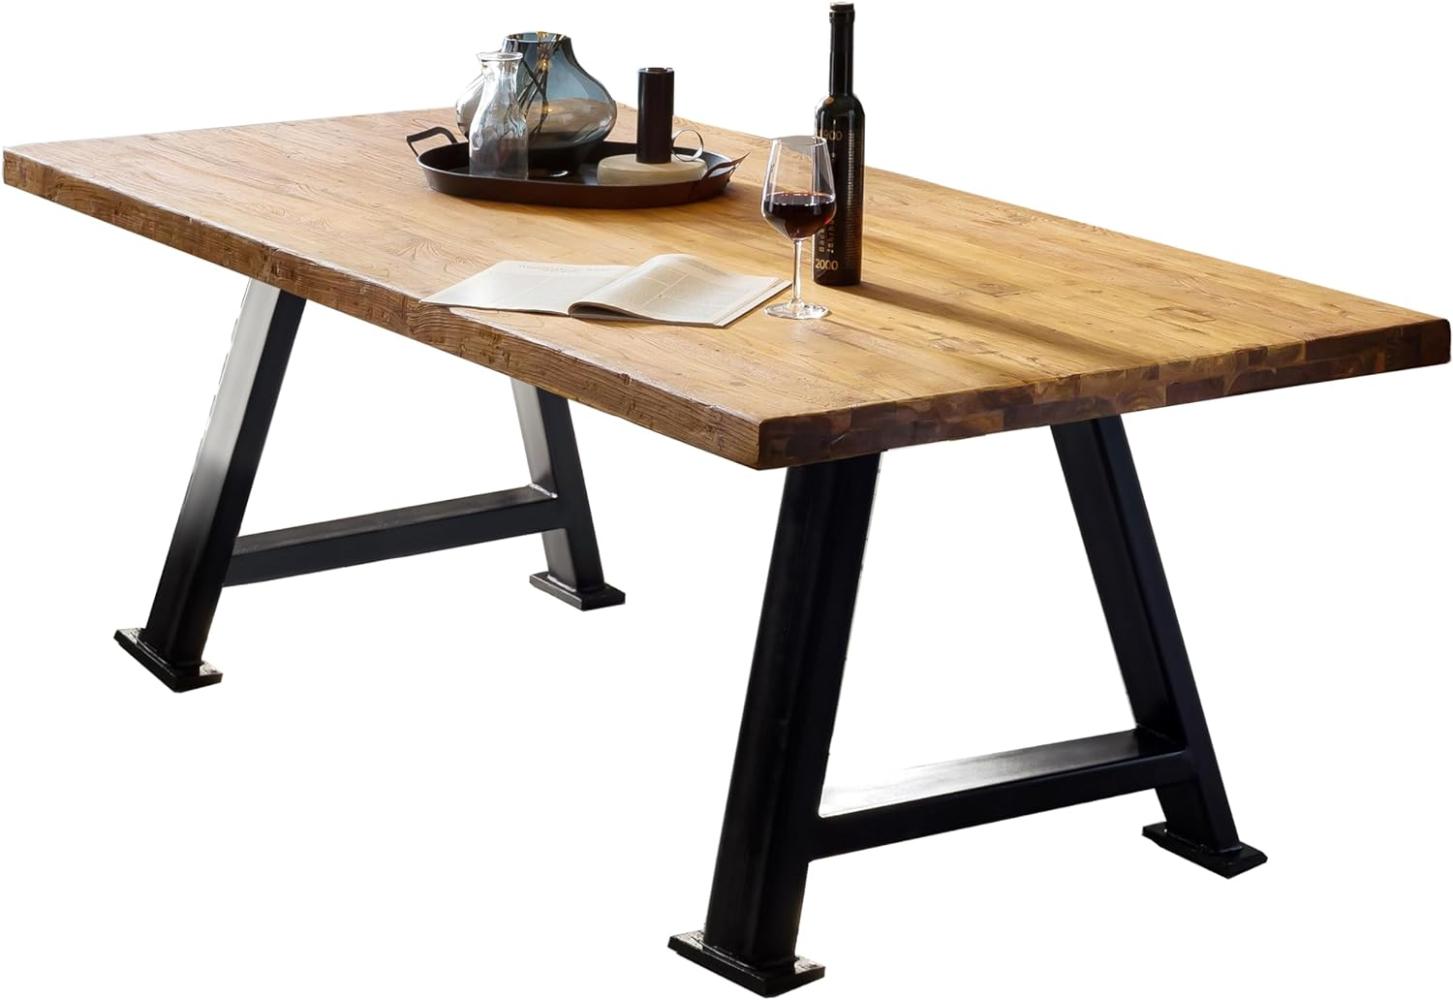 Tisch 200x100 Teak Holztisch Esstisch Küchentisch Wohnzimmertisch Speisetisch Bild 1